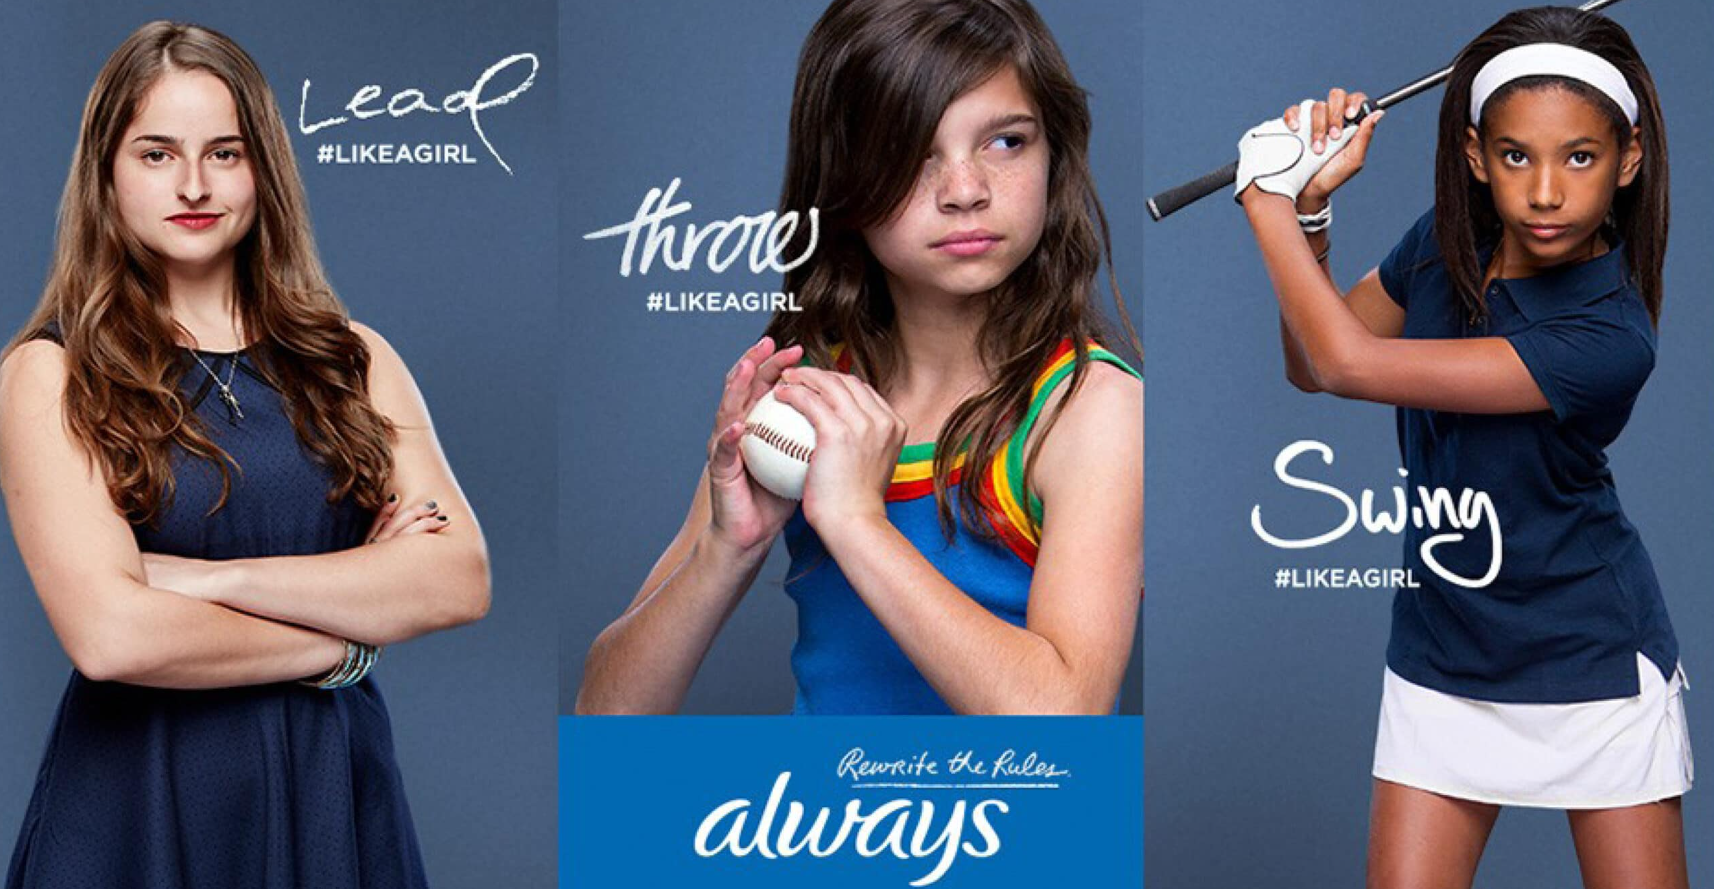 Un claro ejemplo de una buena campaña de branding es la que Always ejecutó para eliminar los prejuicios hacia las niñas.